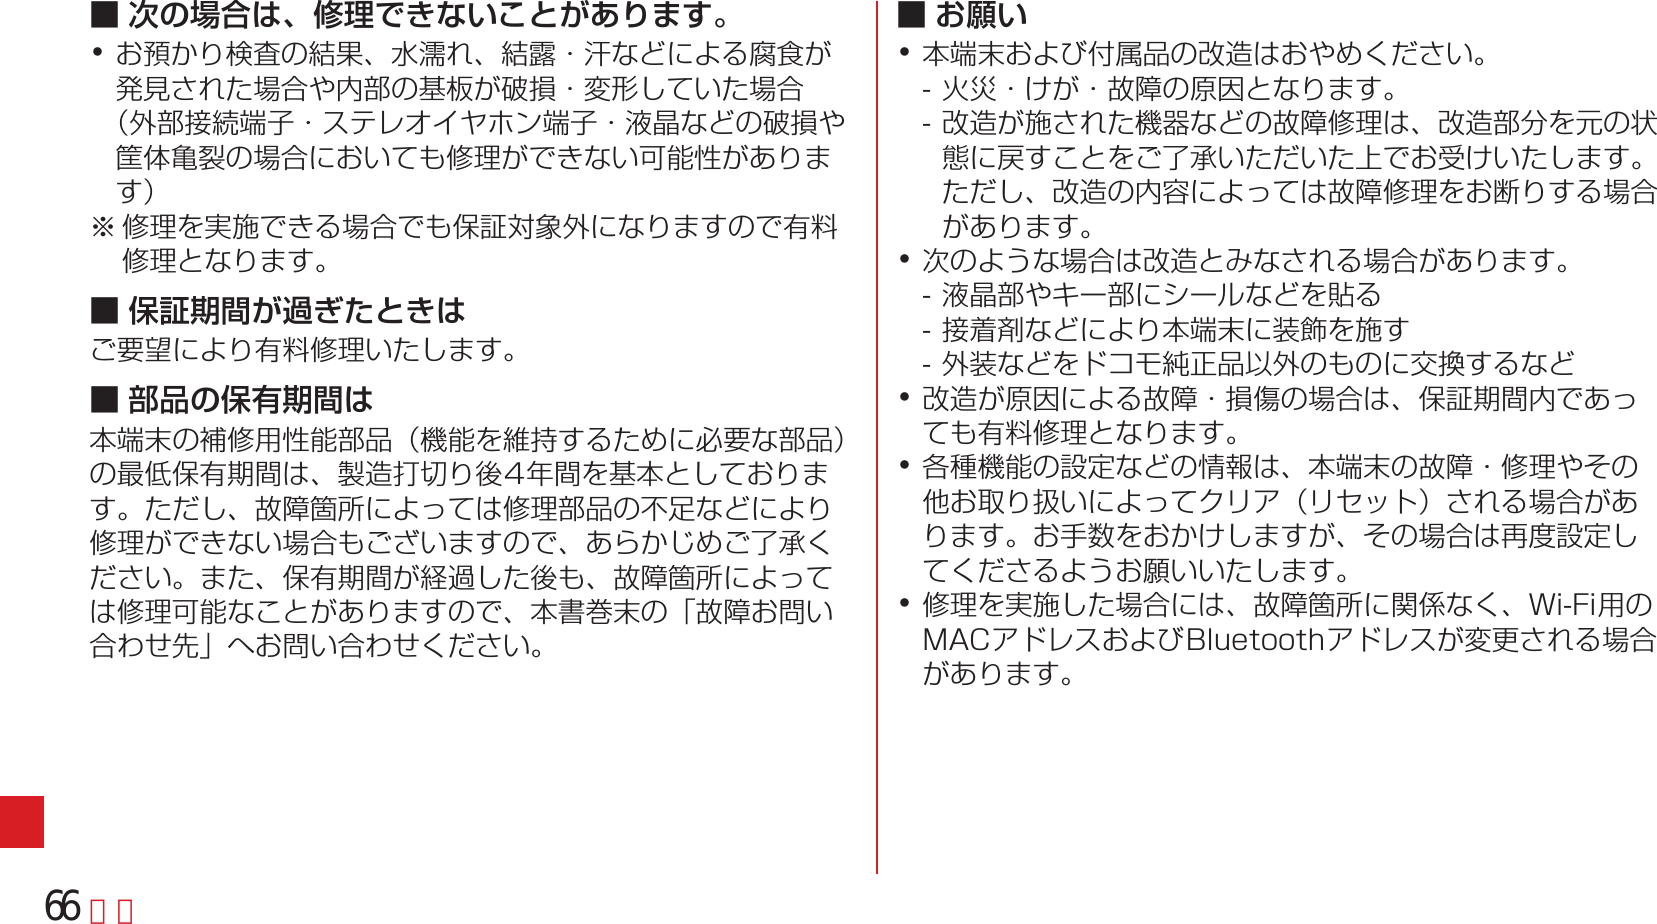 Page 68 of Fujitsu F05F Mobile Phone User Manual 13  UsersManual